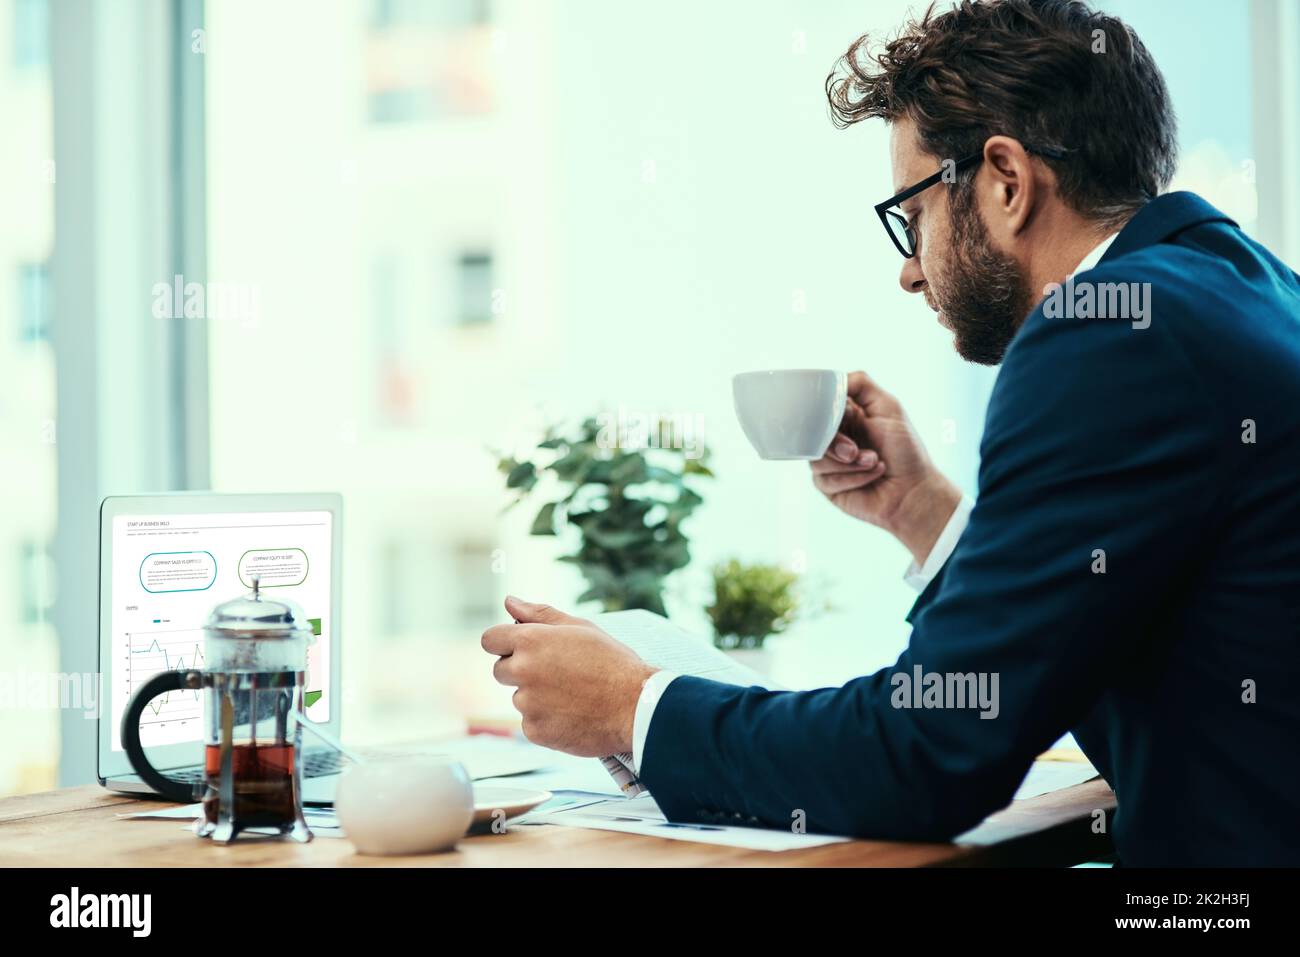 Il commence la journée avec un cuppa et le papier. Photo d'un jeune homme d'affaires qui boit une tasse de thé tout en lisant un journal dans un bureau. Banque D'Images